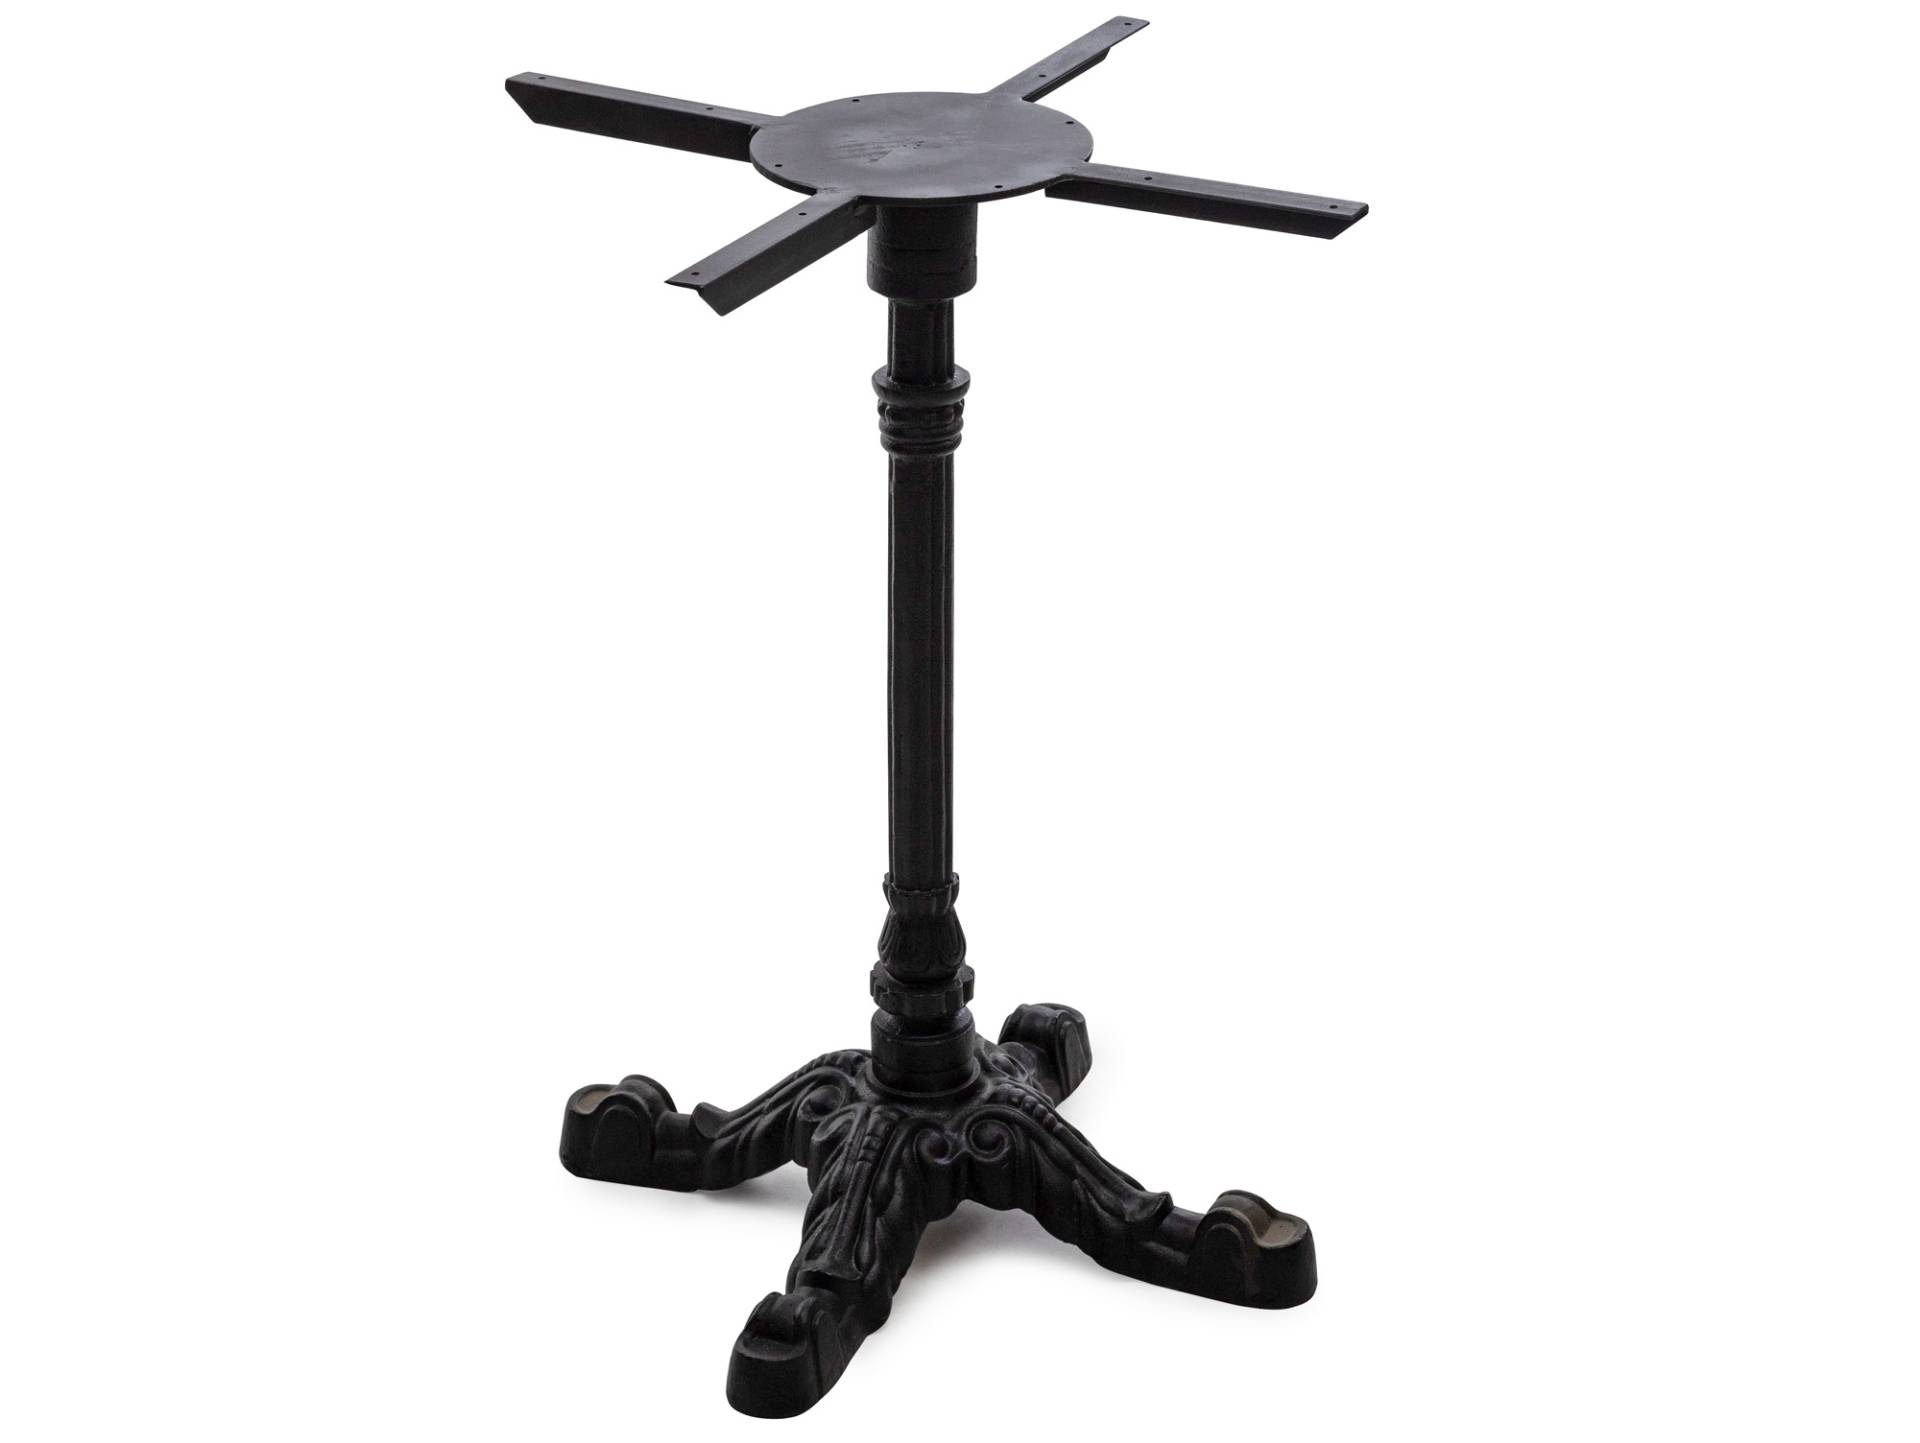 Tischgestell für Esstisch, Material Metall, schwarz lackiert, Höhe: 73 cm von Möbel-Eins